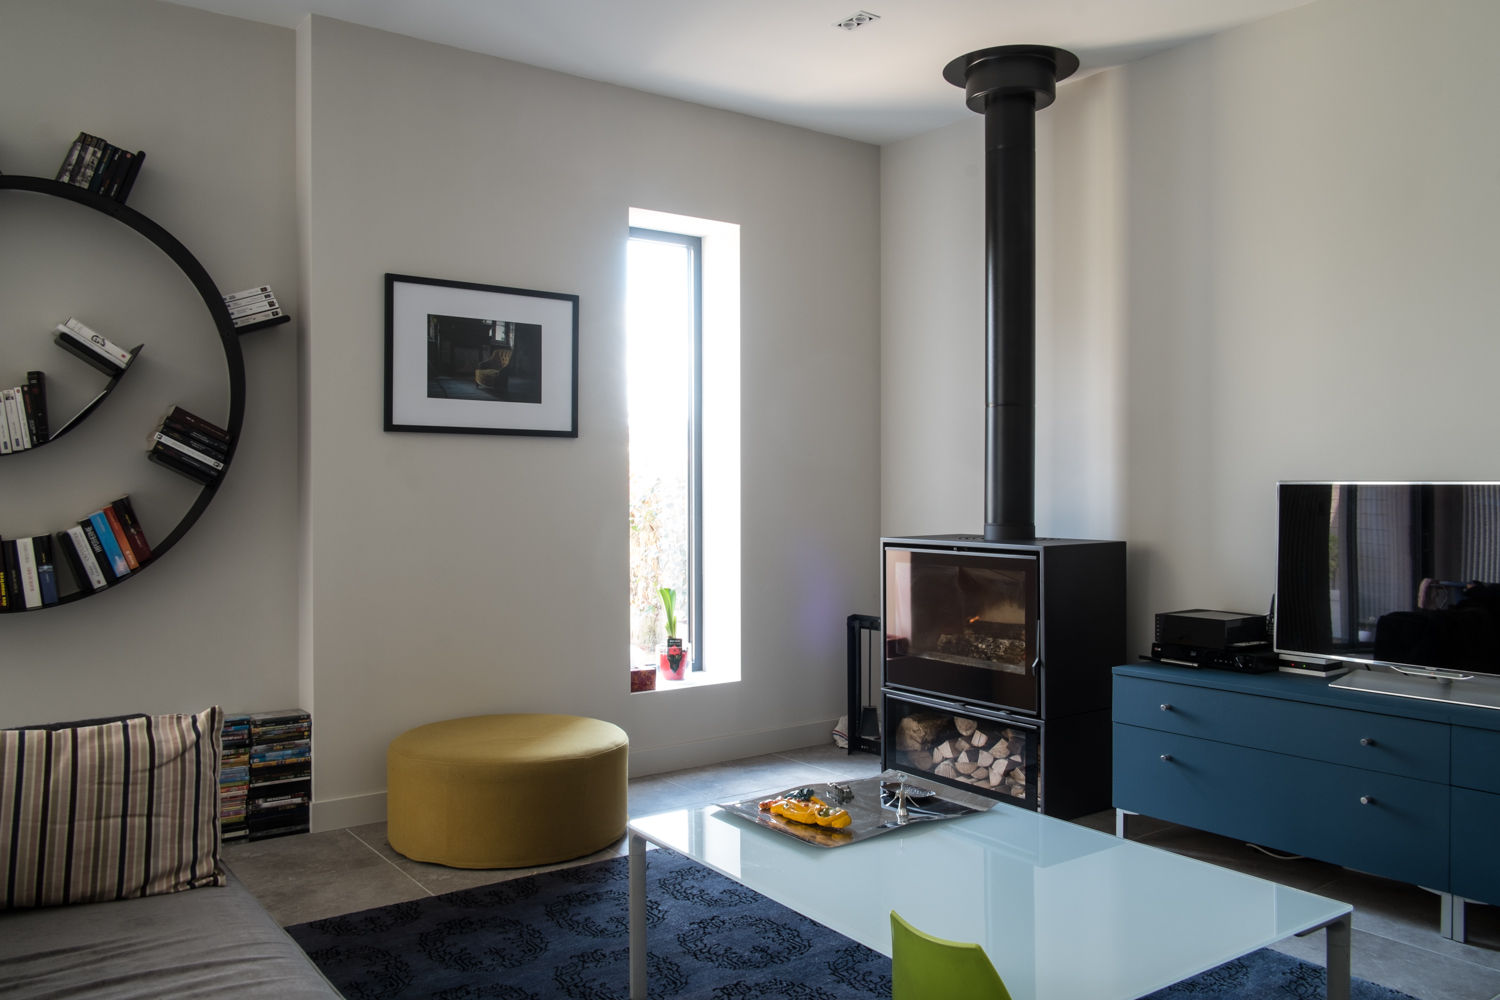 Maison à Limoges 2016, Jean-Paul Magy architecte d'intérieur Jean-Paul Magy architecte d'intérieur Salas modernas